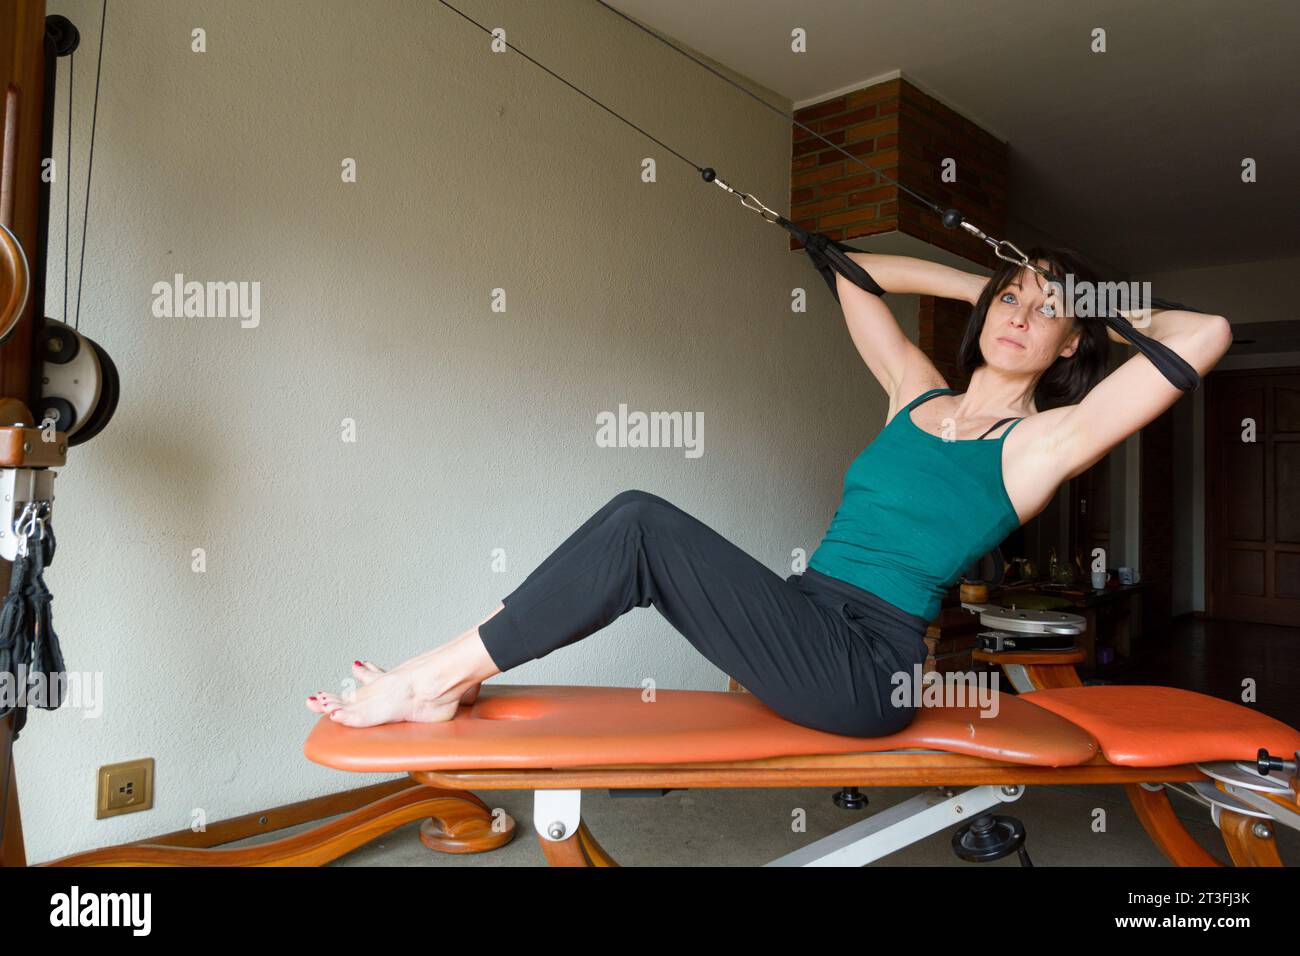 Lateinische Erwachsene Frau zu Hause trainiert Balance und Energie, stärkt Gelenke und Oberkörper- und Hüftmuskeln, sitzt auf einem Trainingsgerät. Kopierbereich. Stockfoto